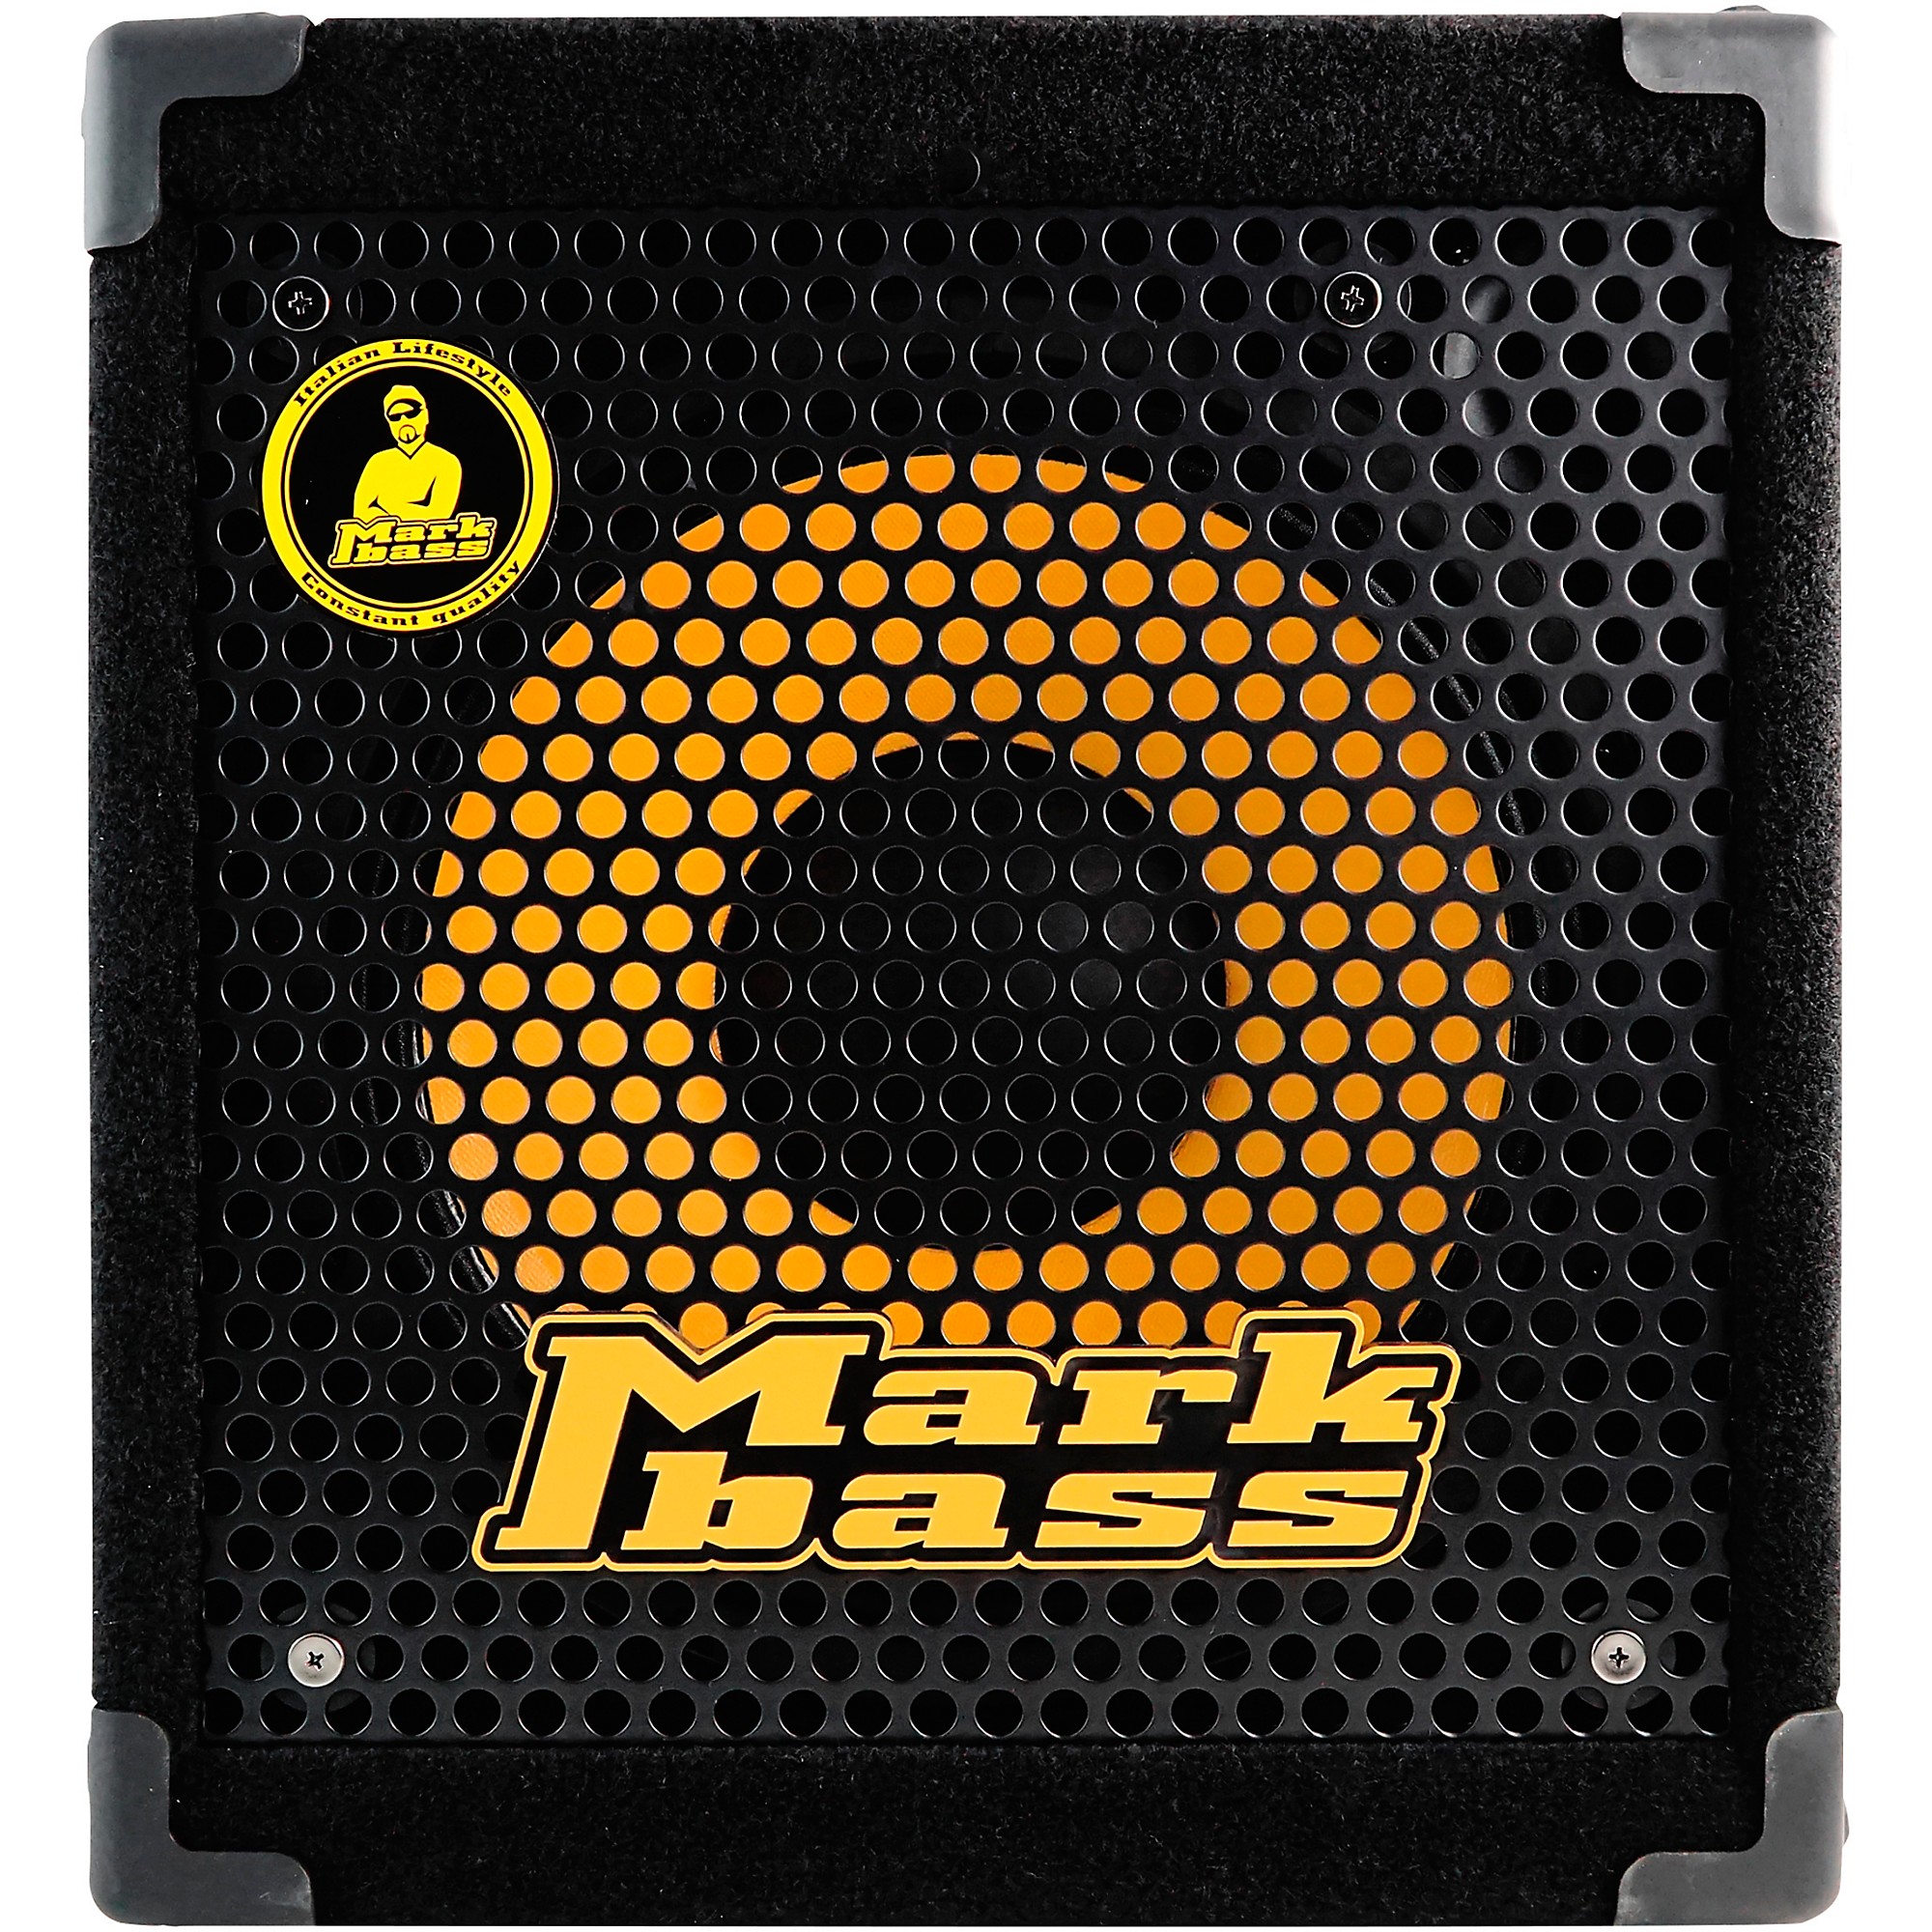 Markbass Mini CMD 121P IV 1x12 300W Bass Combo Amplifier | Music